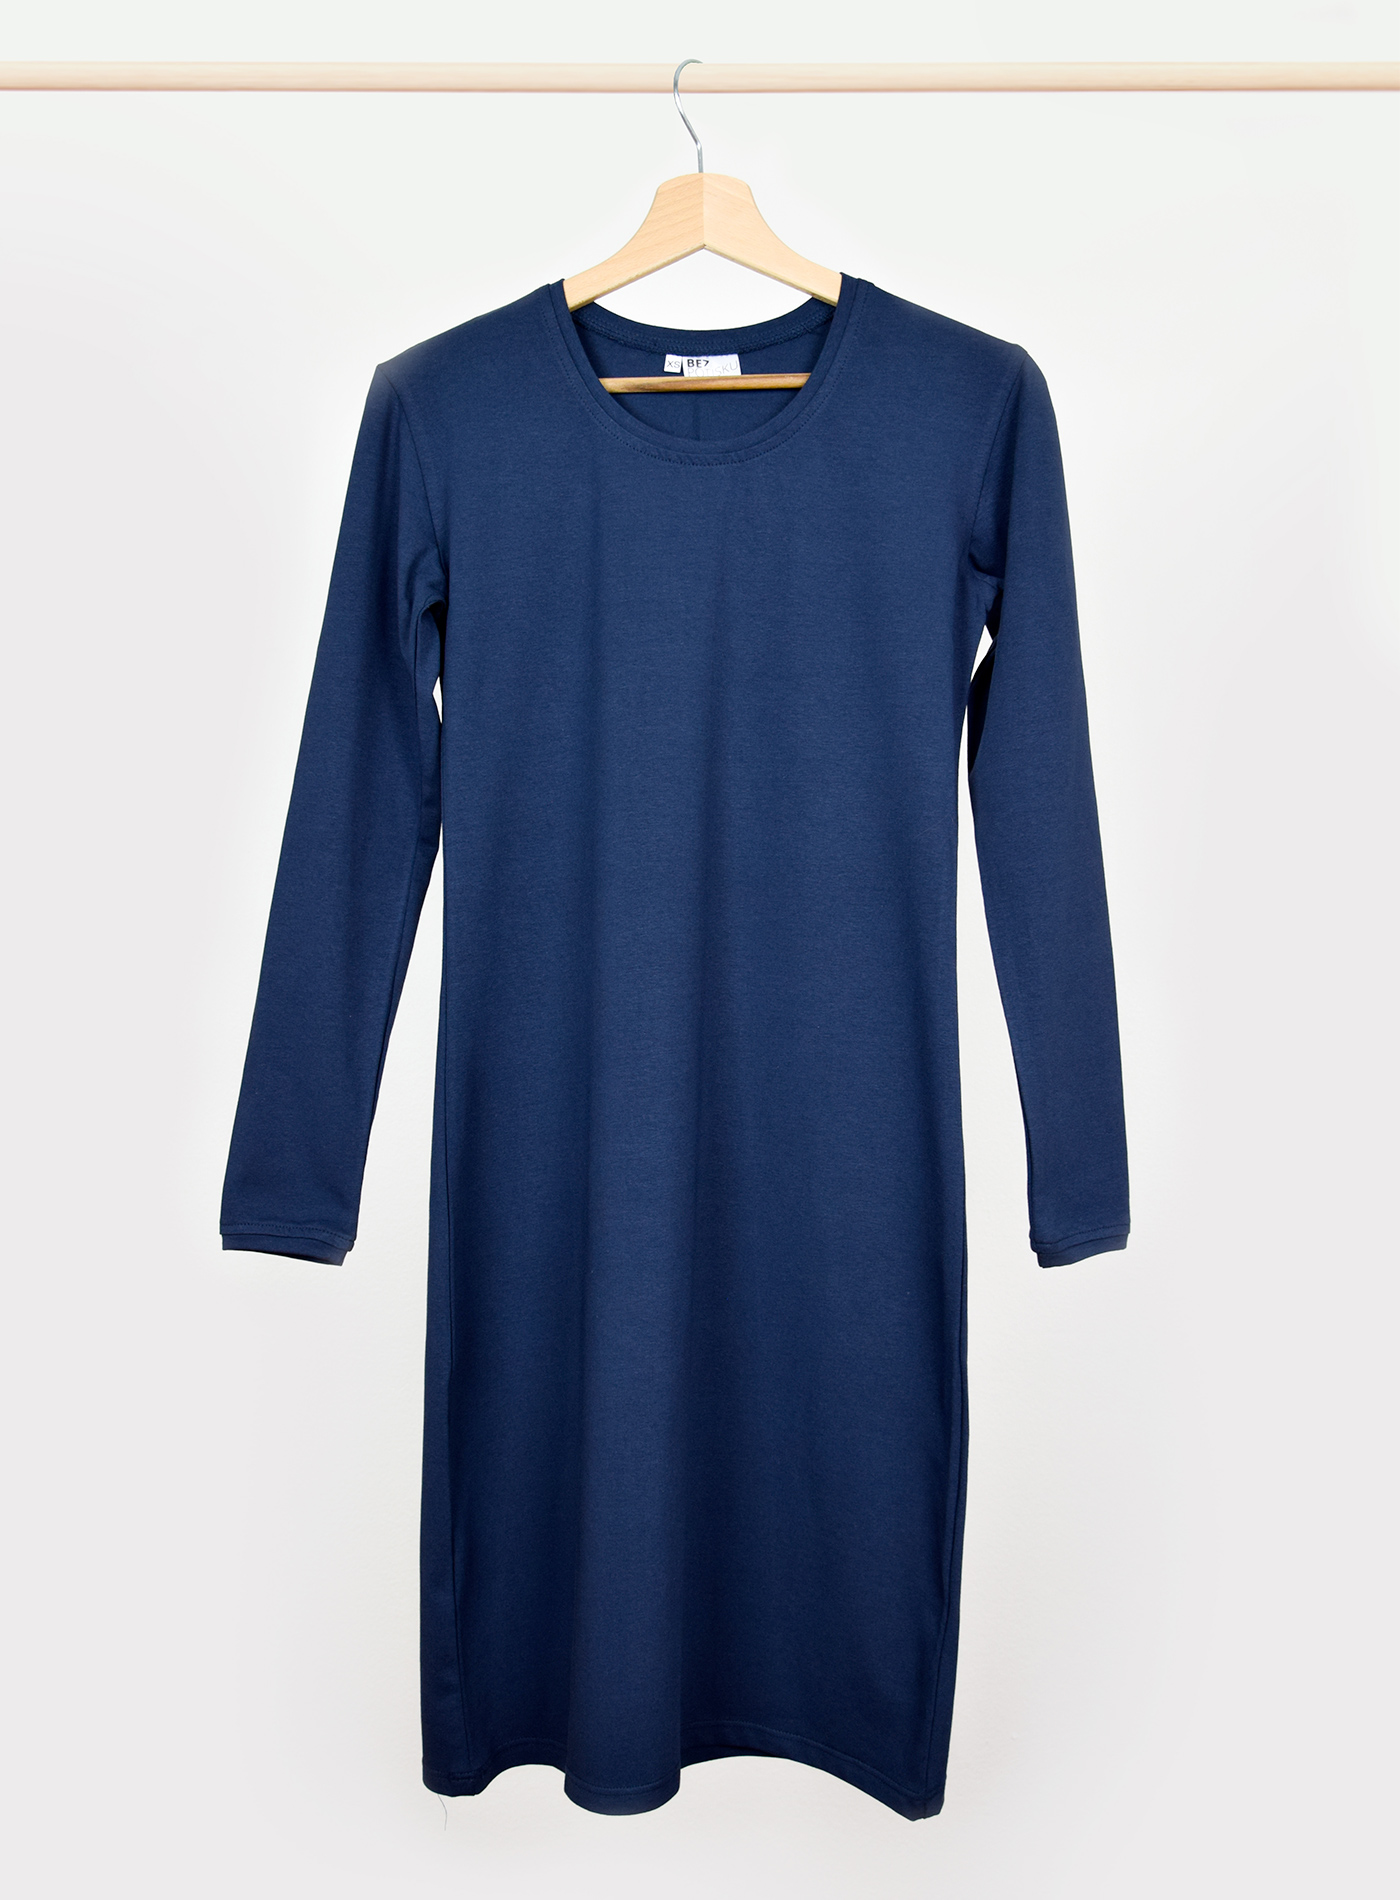 Dámské šaty s dlouhým rukávem BezPotisku Veronika - tmavě modrá XS